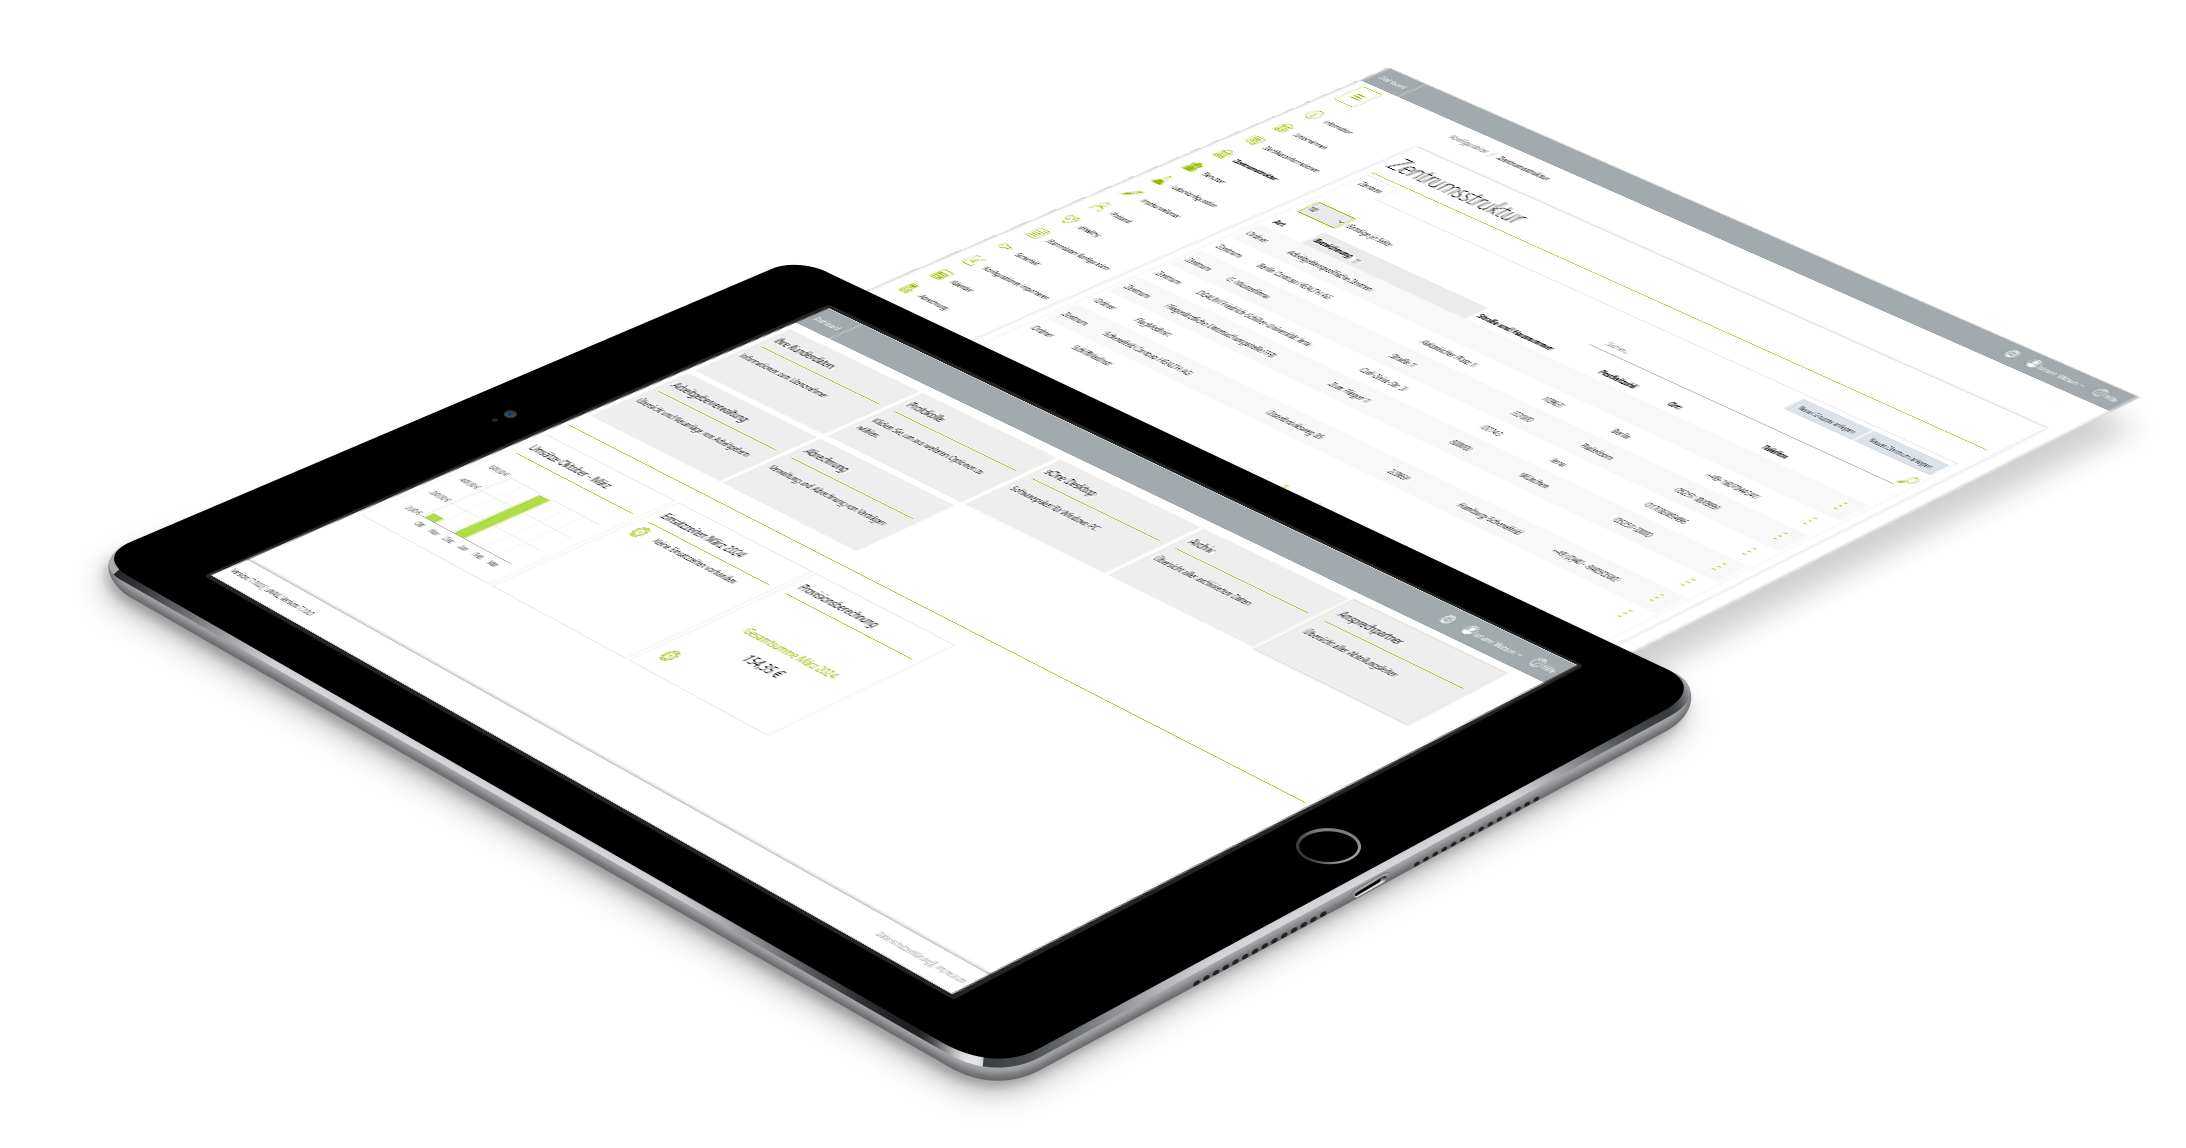 Anmeldung Surface mit Screen aus der Plattform sOne Web